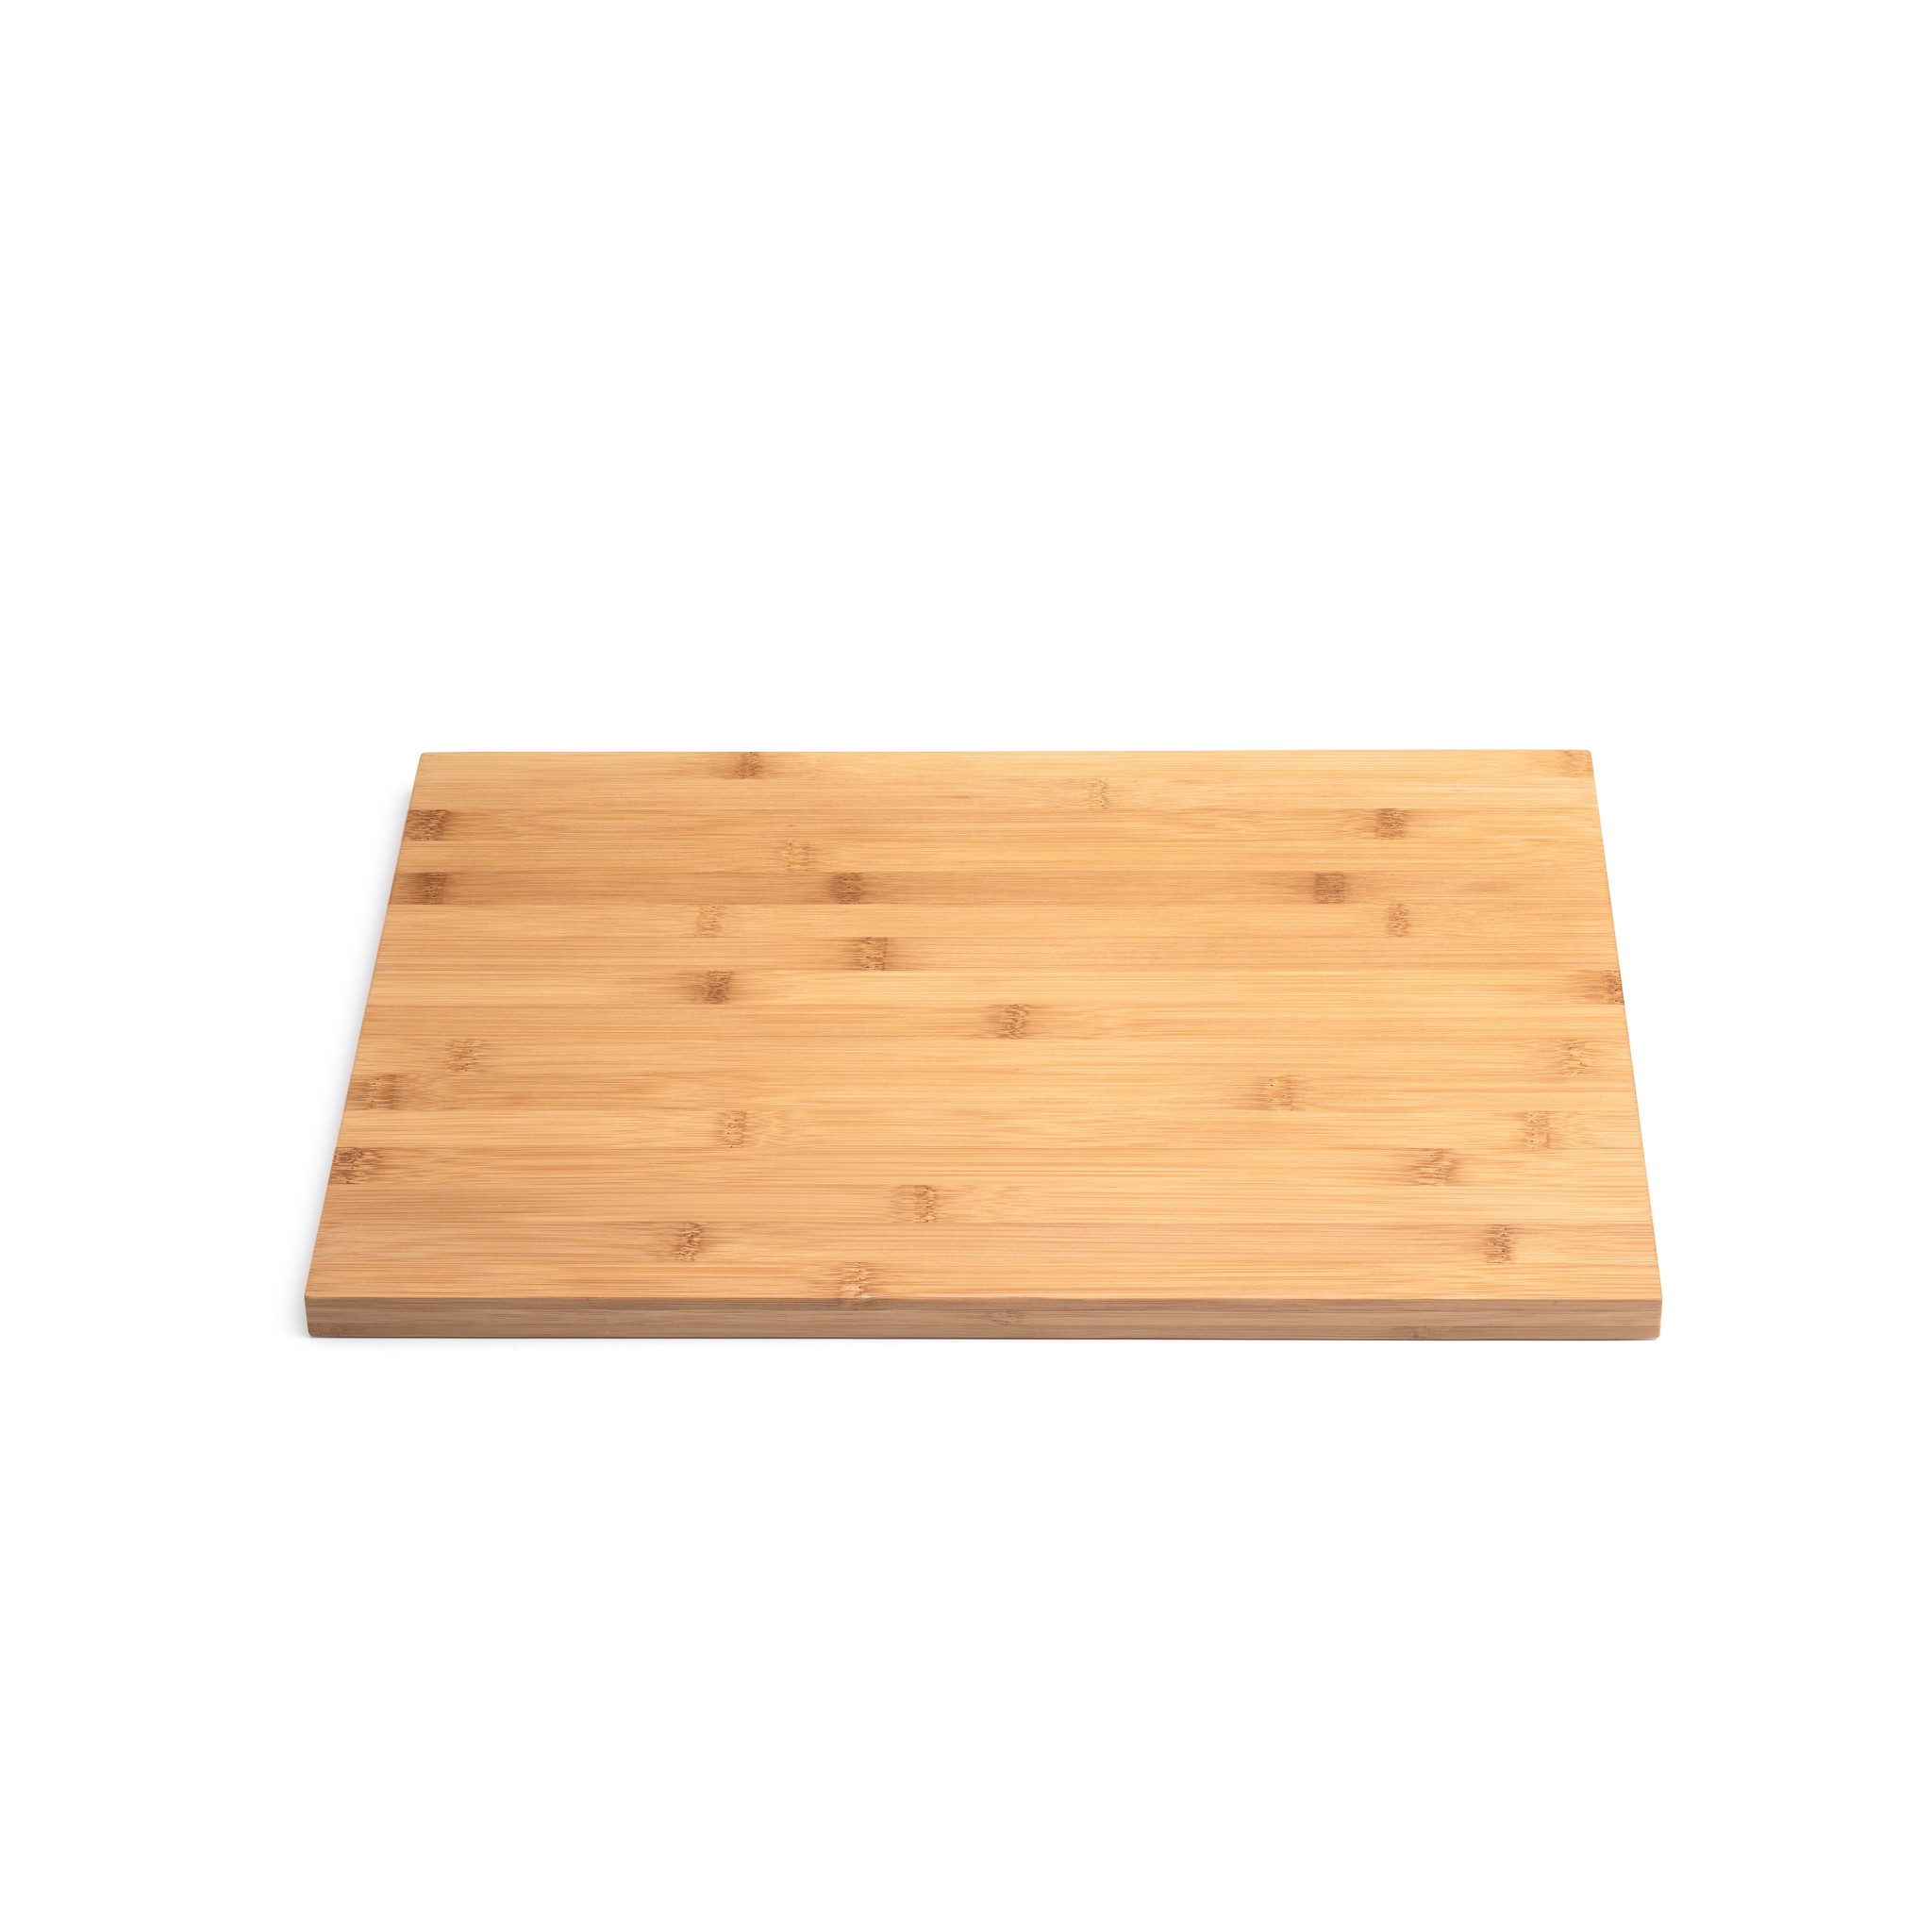 Höfats Crate plank Compleetgroen